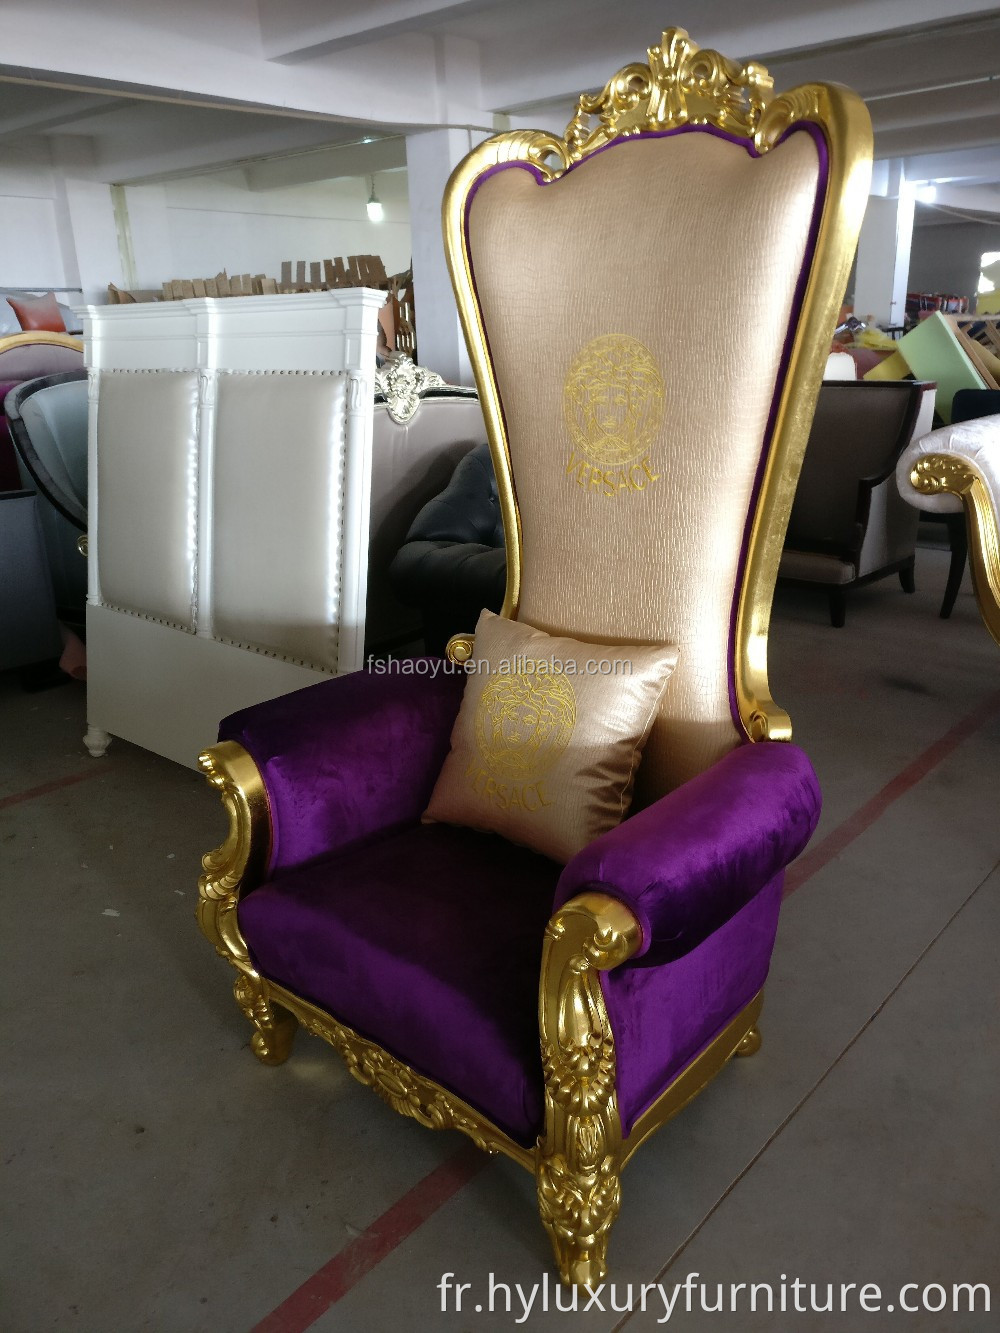 Fournissez la chaise royale de trône de roi, la chaise de bergère d'unité centrale, la chaise à dossier haut d'hôtel en cuir pourpre